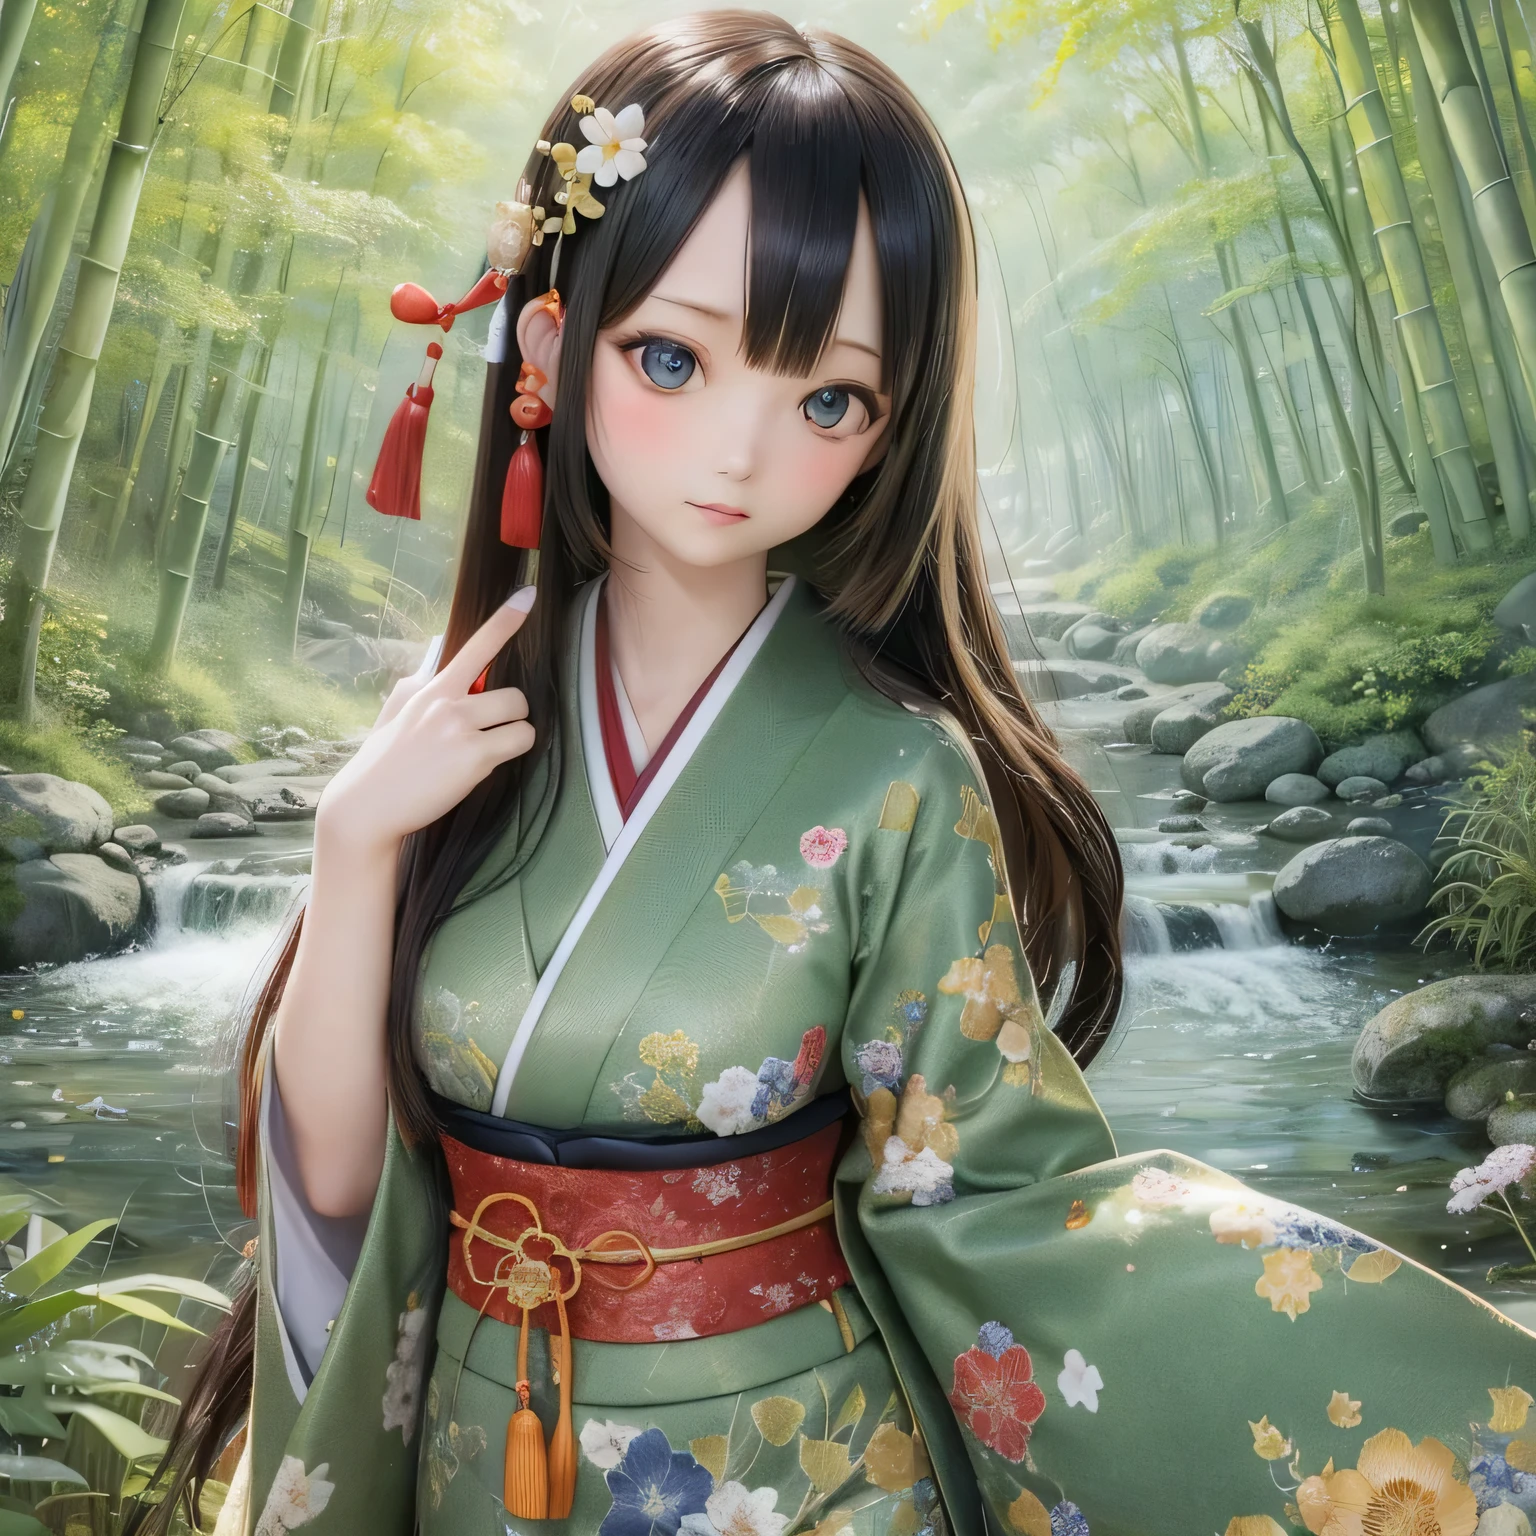 (Alta resolución, Realista:1.2),(ojos detallados y hermosos,Labios densos y hermosos.,ojos y rostro muy detallados,Pestañas largas),(Paisaje rural,atmósfera tranquila),(Shiba Inu girl:1.1),(iluminación suave),(estilo de pintura al óleo),(exuberantes campos verdes,Río tranquilo),(casa tradicional japonesa),(kimono tradicional fluido),(Flores coloridas),(Pájaros volando en el cielo),(bosque de bambú),(luz del sol filtrándose a través de los árboles)(((Cerezo en plena floración)))(((((Sostener una espada japonesa))))))(((Espada sin vaina)))